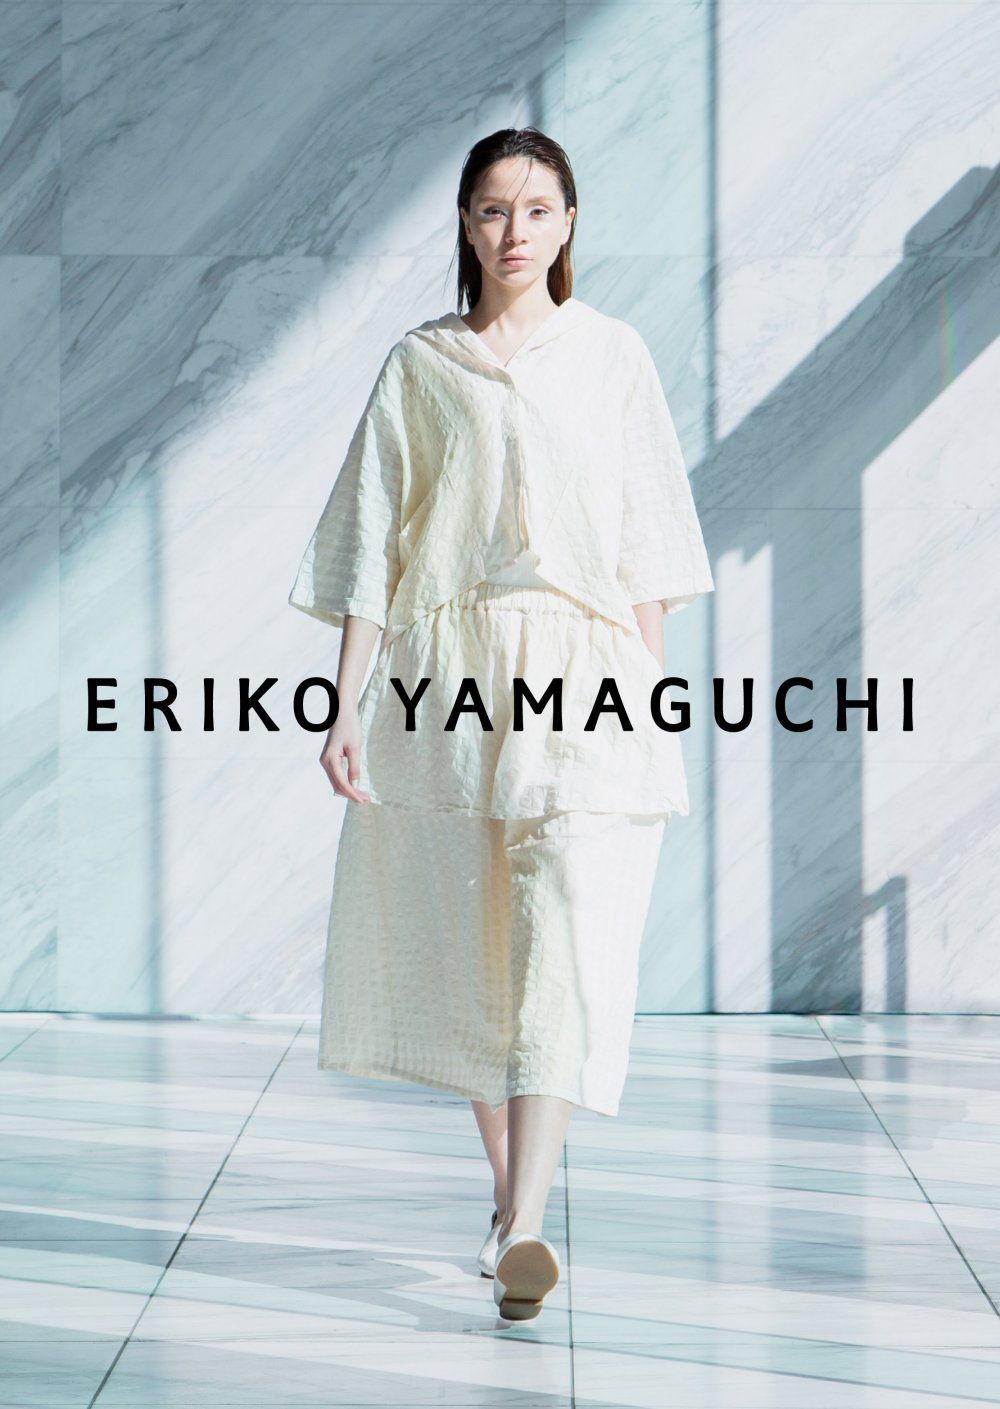 差異を越えた境界のない世界をモードなファッションで表現するブランド〈ERIKO YAMAGUCHI〉